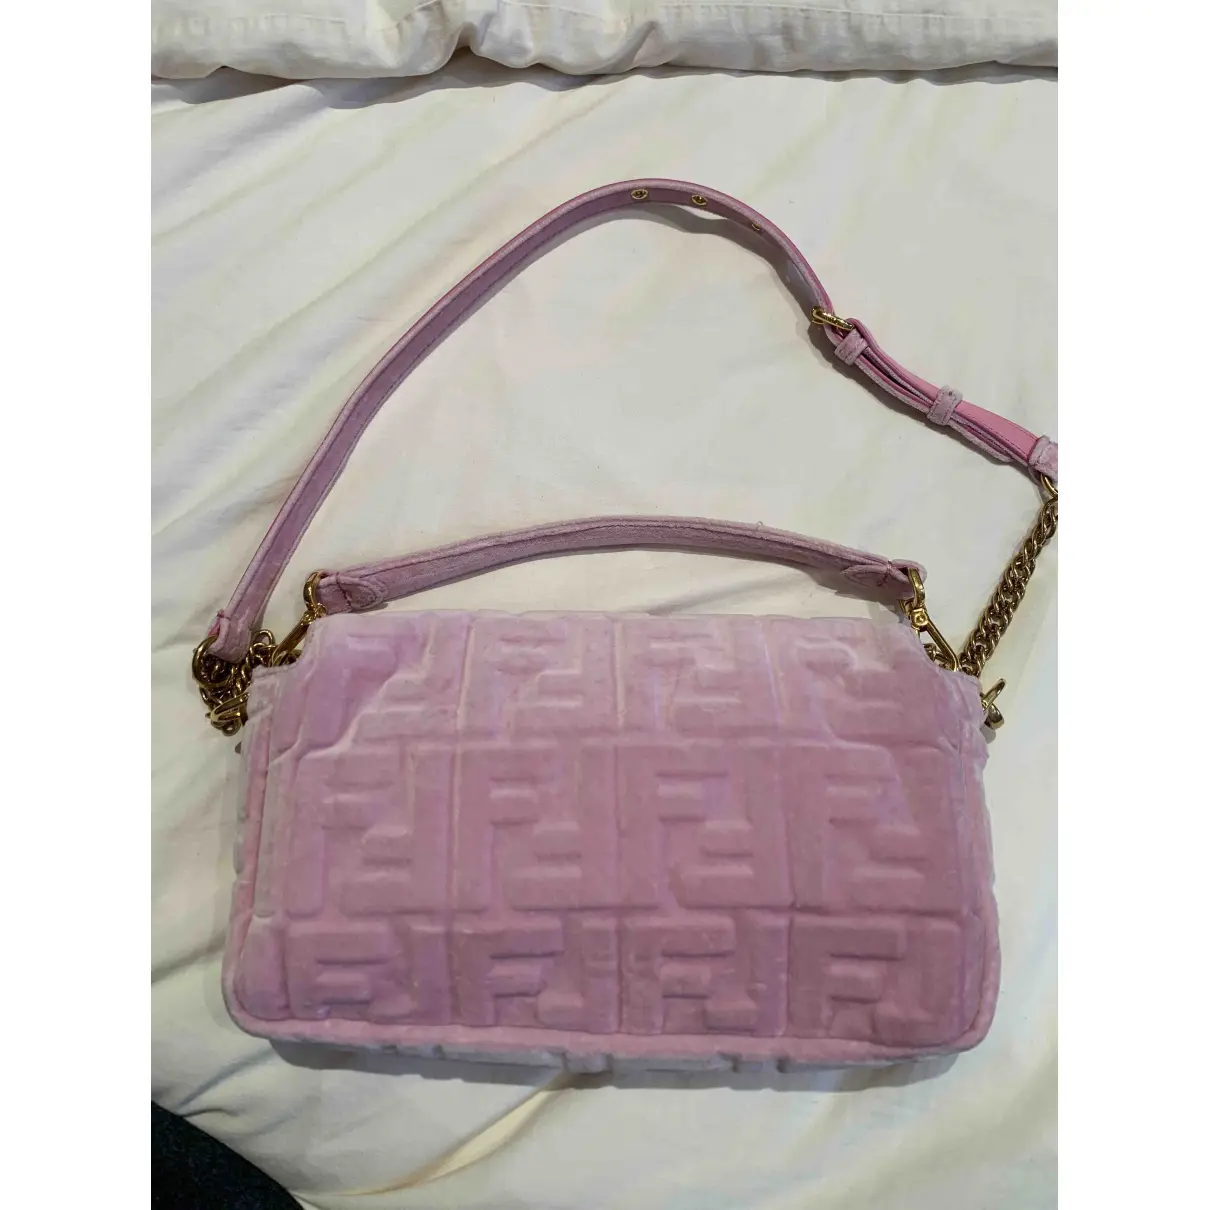 Buy Fendi Baguette velvet handbag online